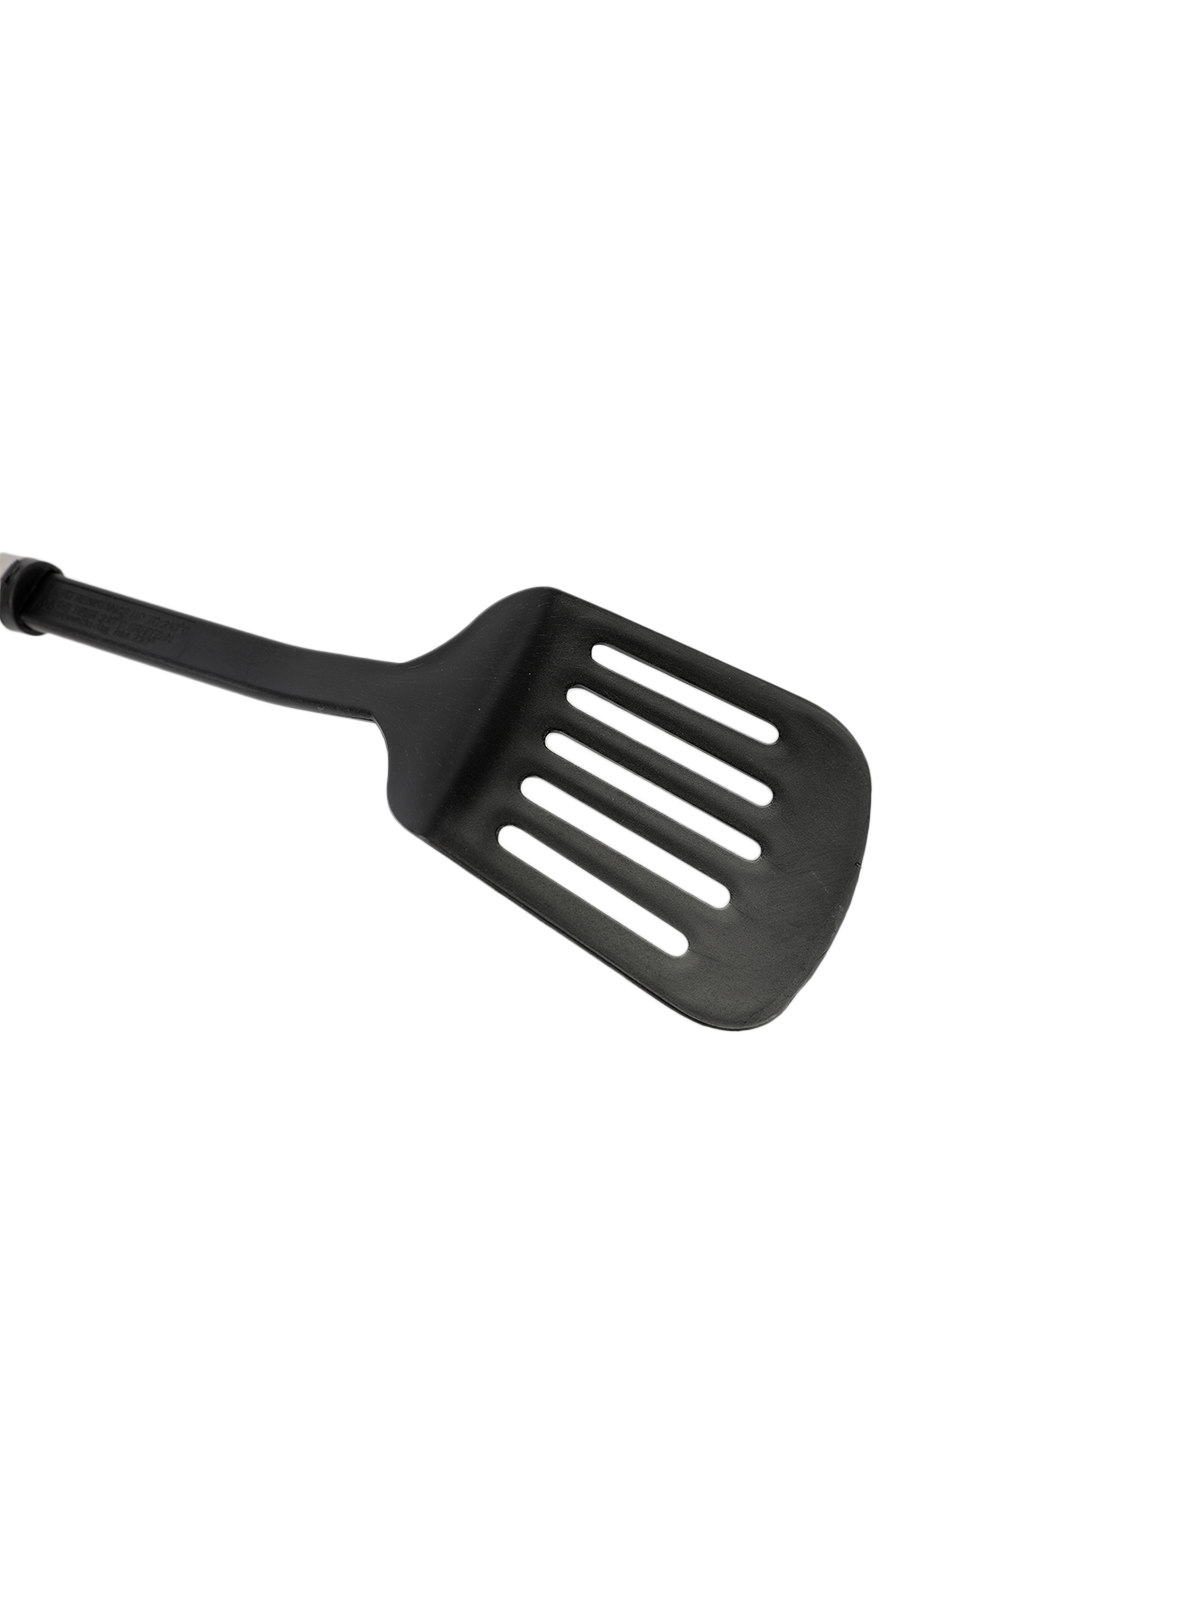 Лопатка кухонная (с прорезями), пластик, ручка нержавеющая сталь, 32,5*7,7 см (PR-011)